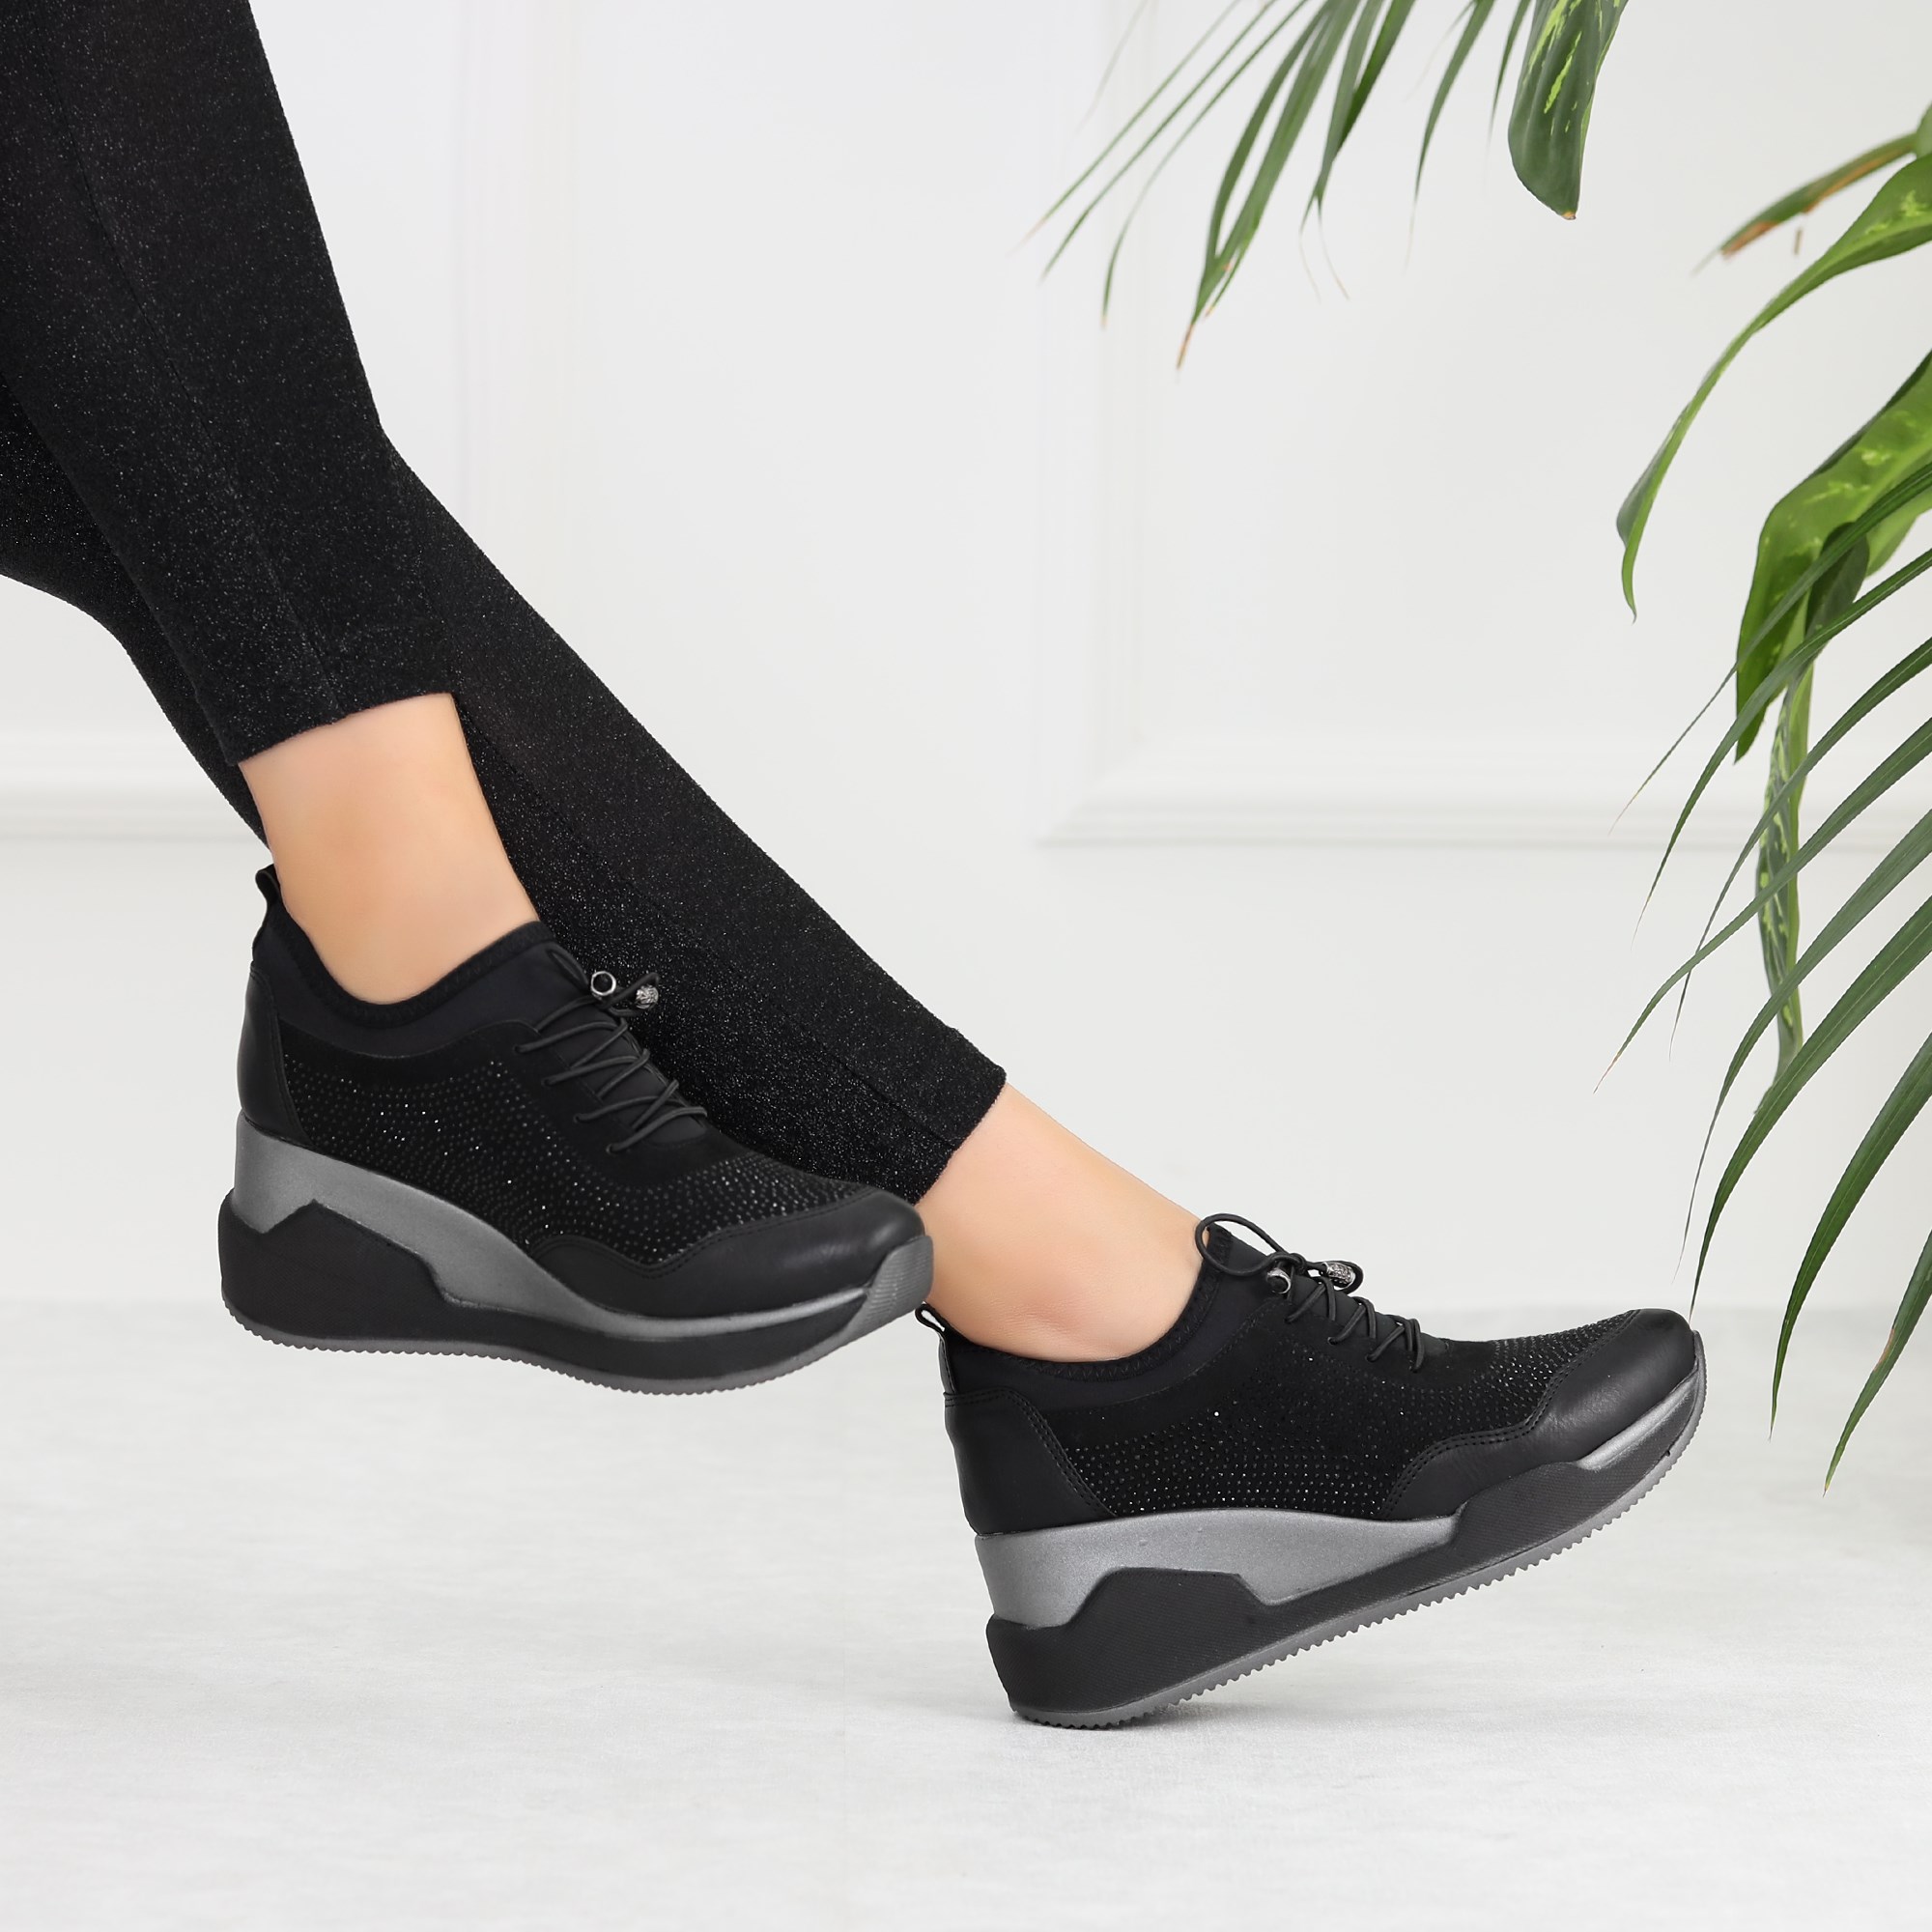 Verizo Siyah Taşlı Bağcıksız Spor Kadın Ayakkabı